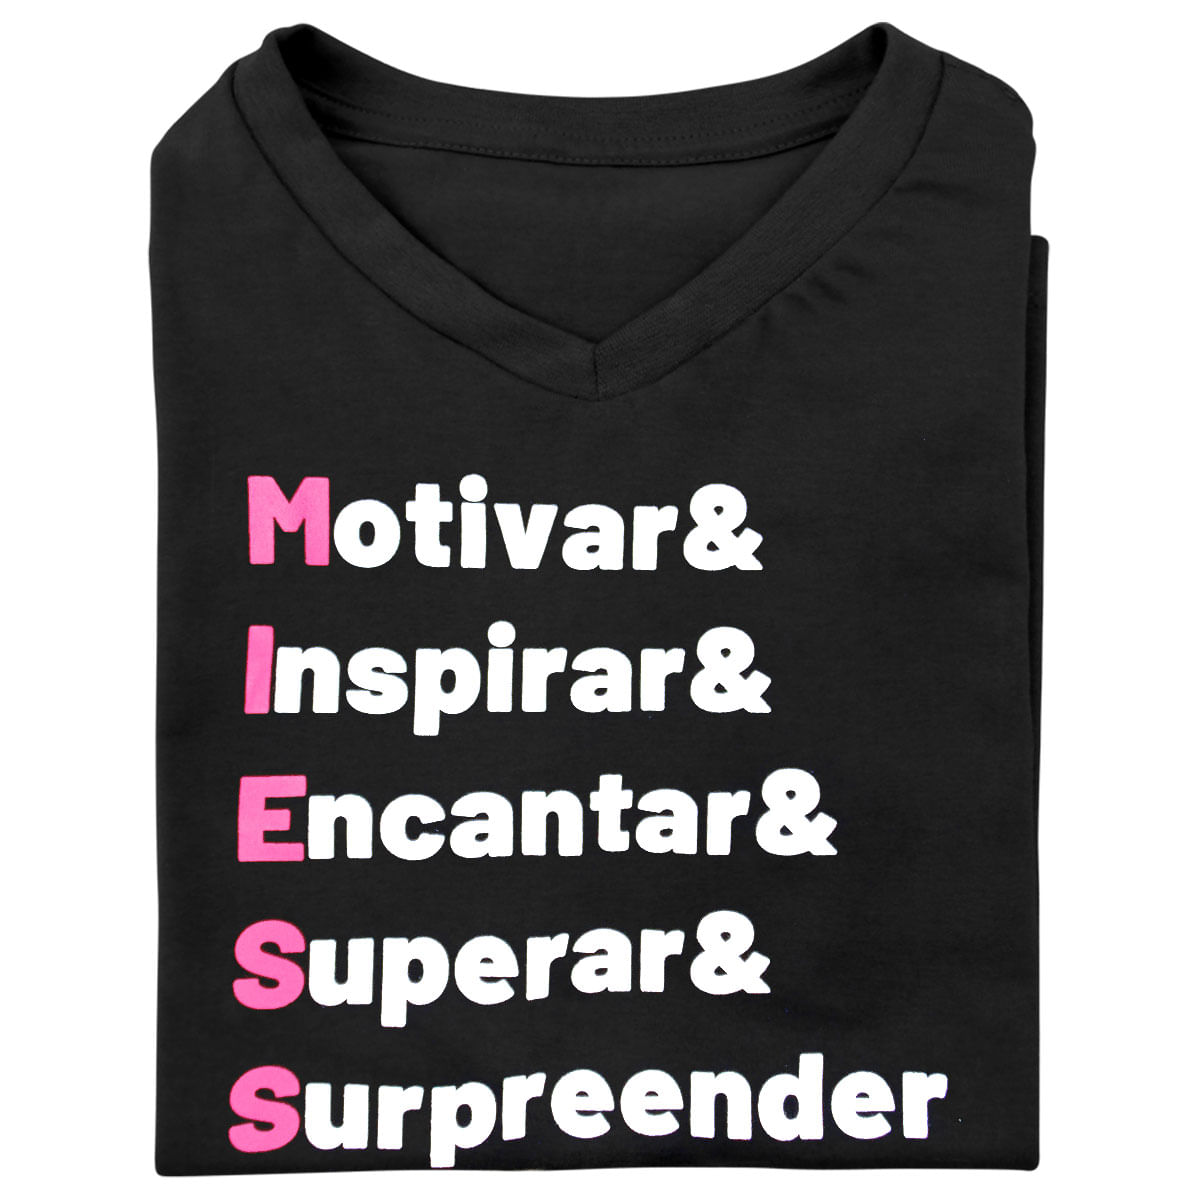 Camiseta Masculina Motivar Inspirar Encantar Superar & Surpreender Miess